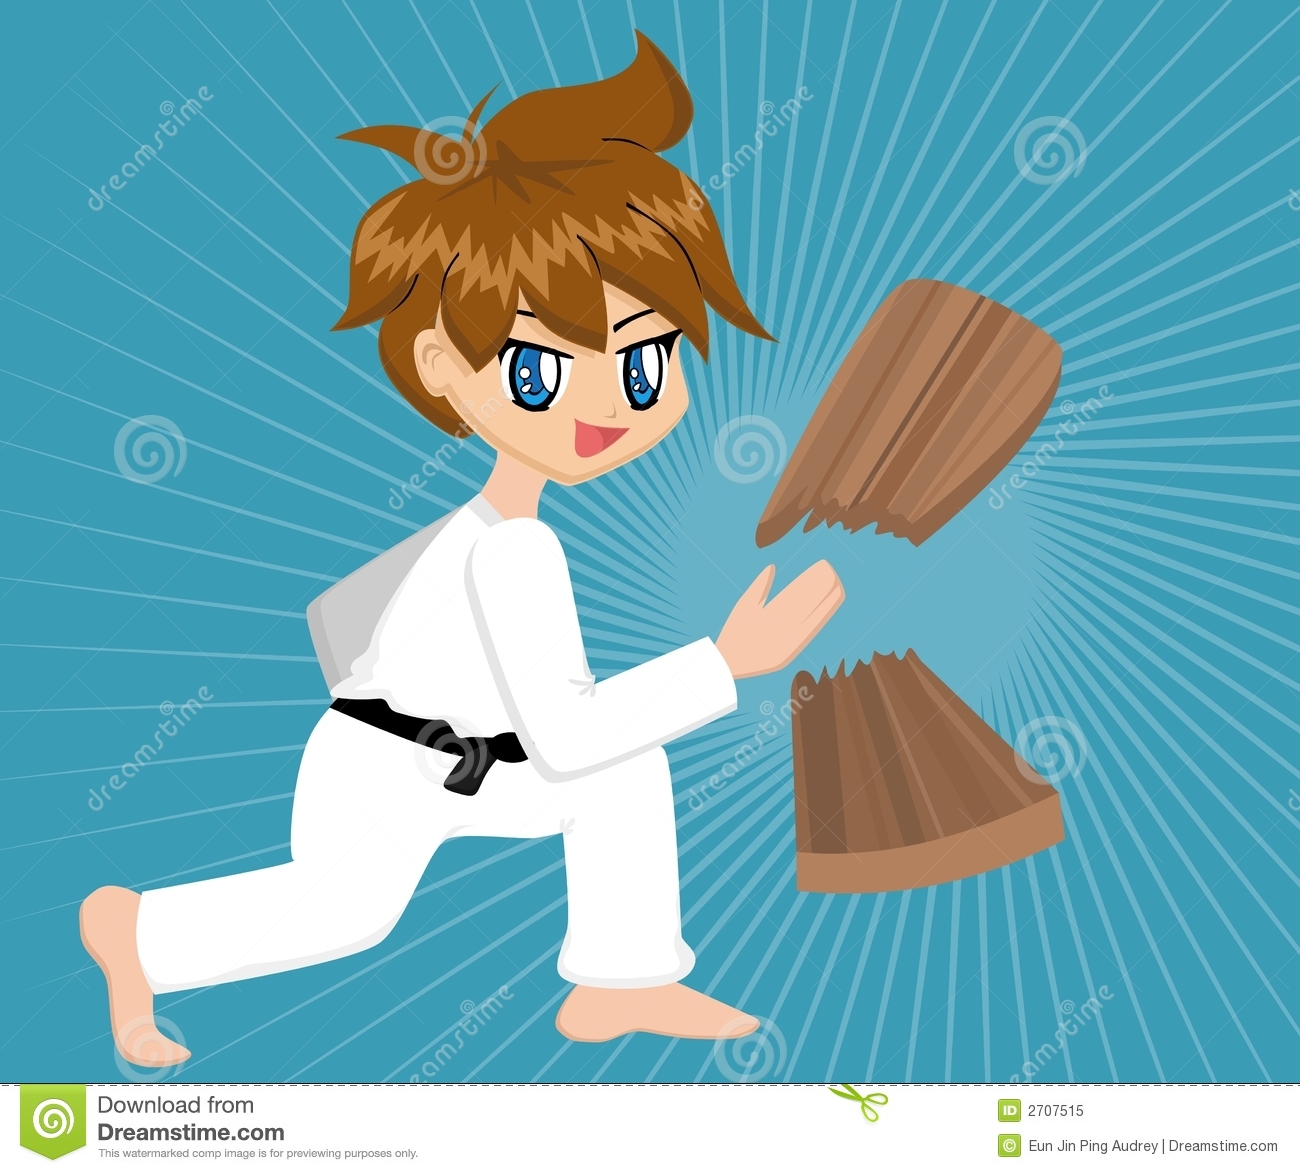 Cute Cartoon Karate Boy With Black Belt Chopping A Wooden Plank 